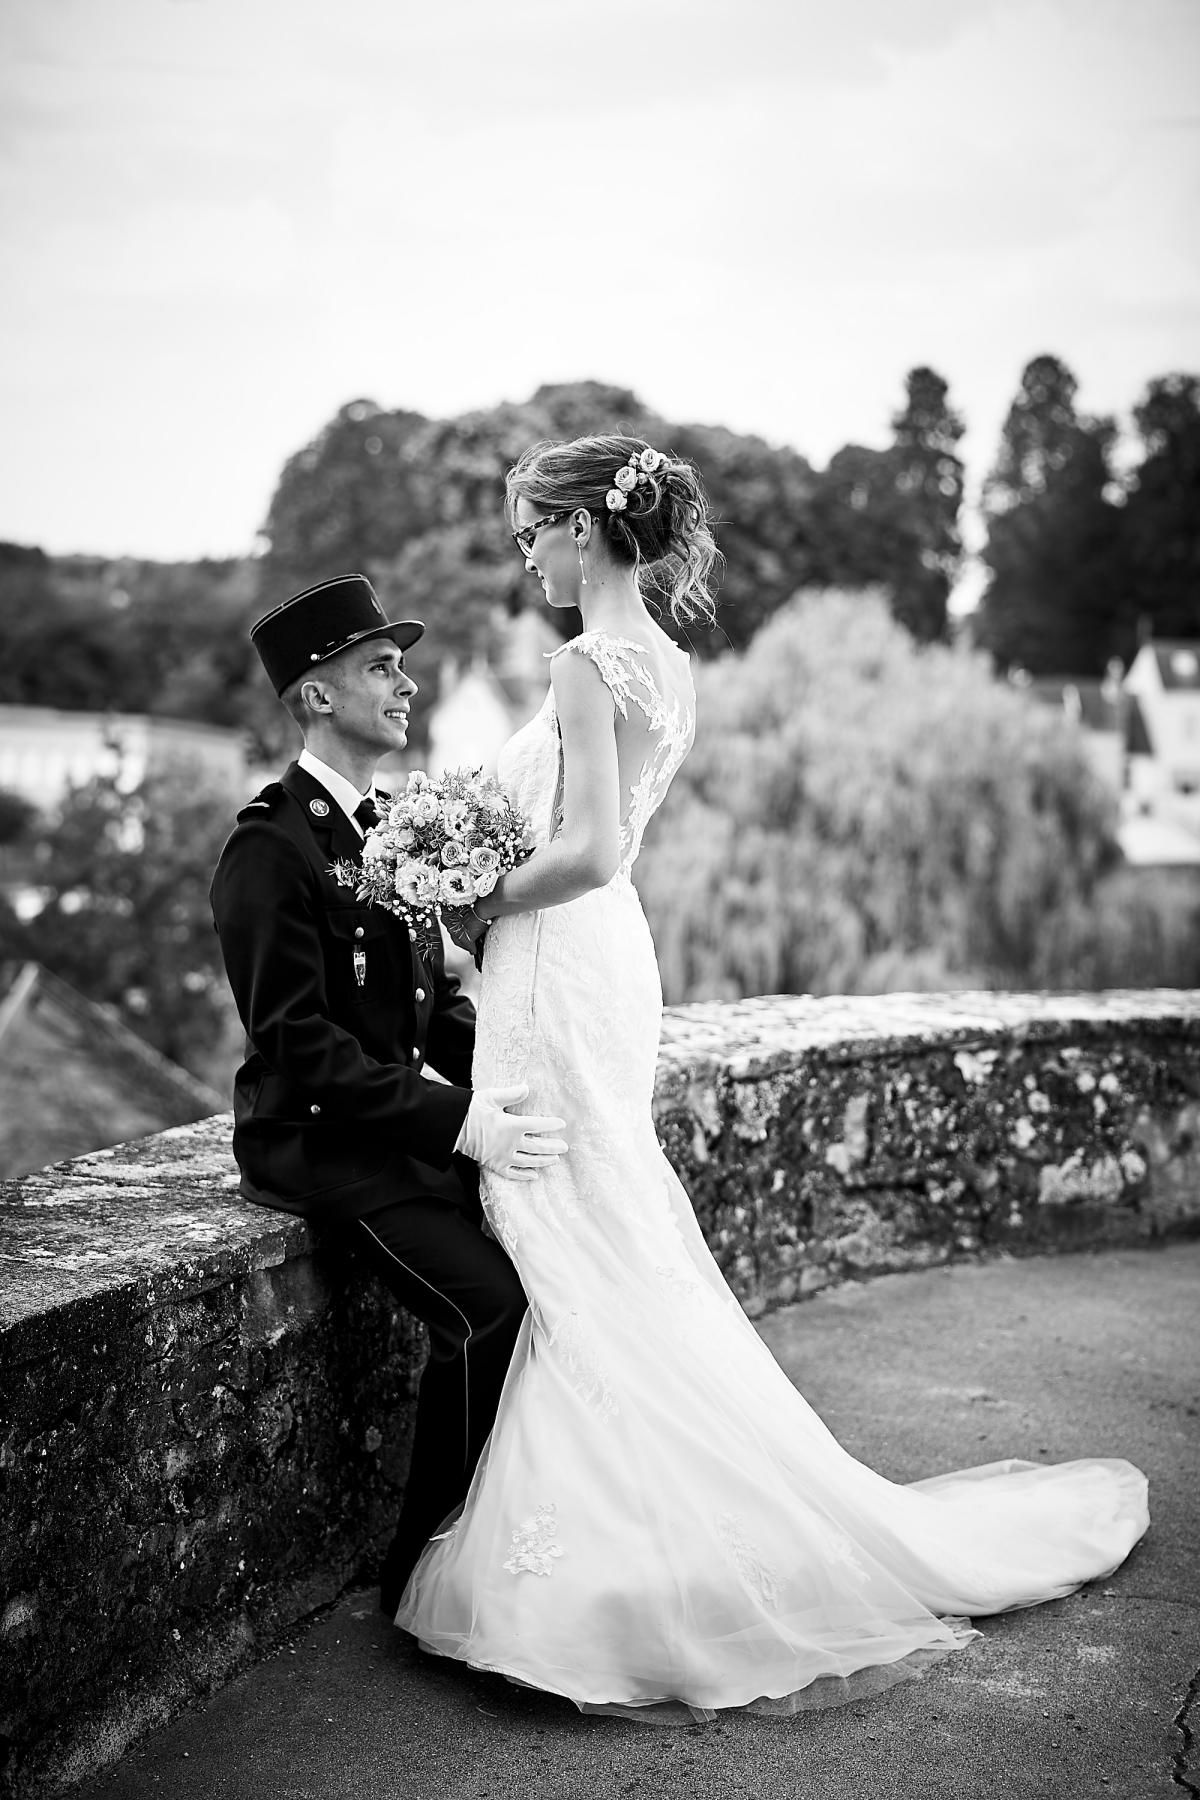 photographe-vidéaste-mariage-charolles-sophie-anne-aurelien-juetjuphotographie